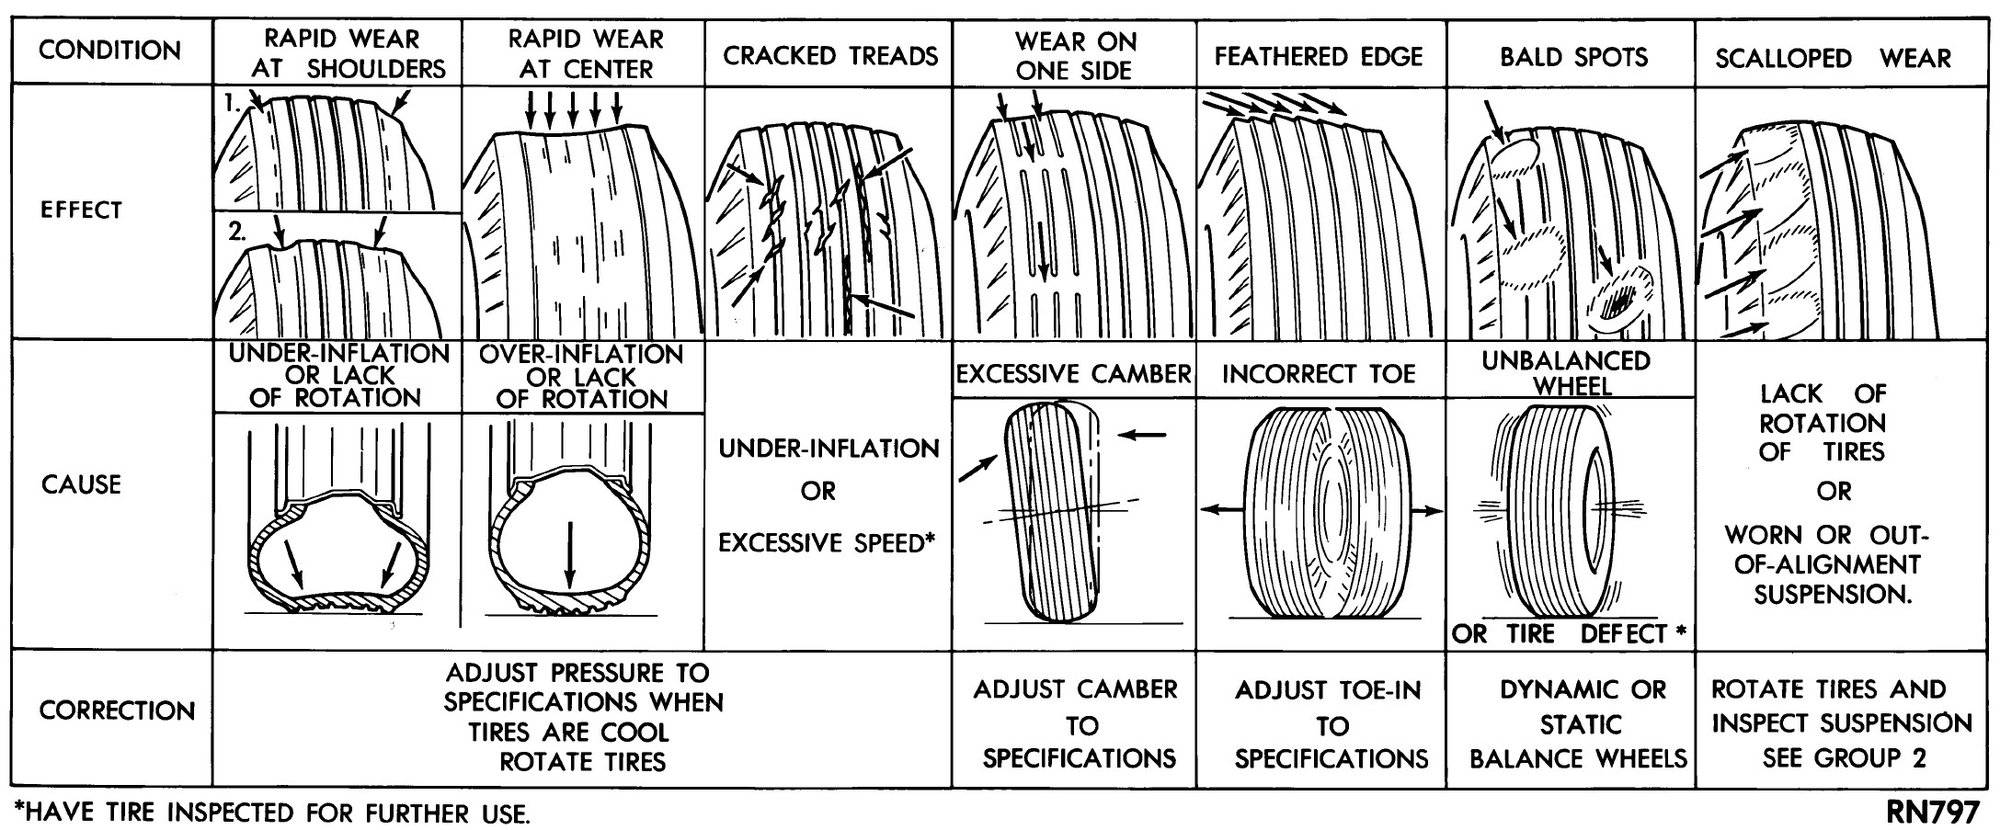 Как определить износ шин — причины, индикатор износа протектора резины